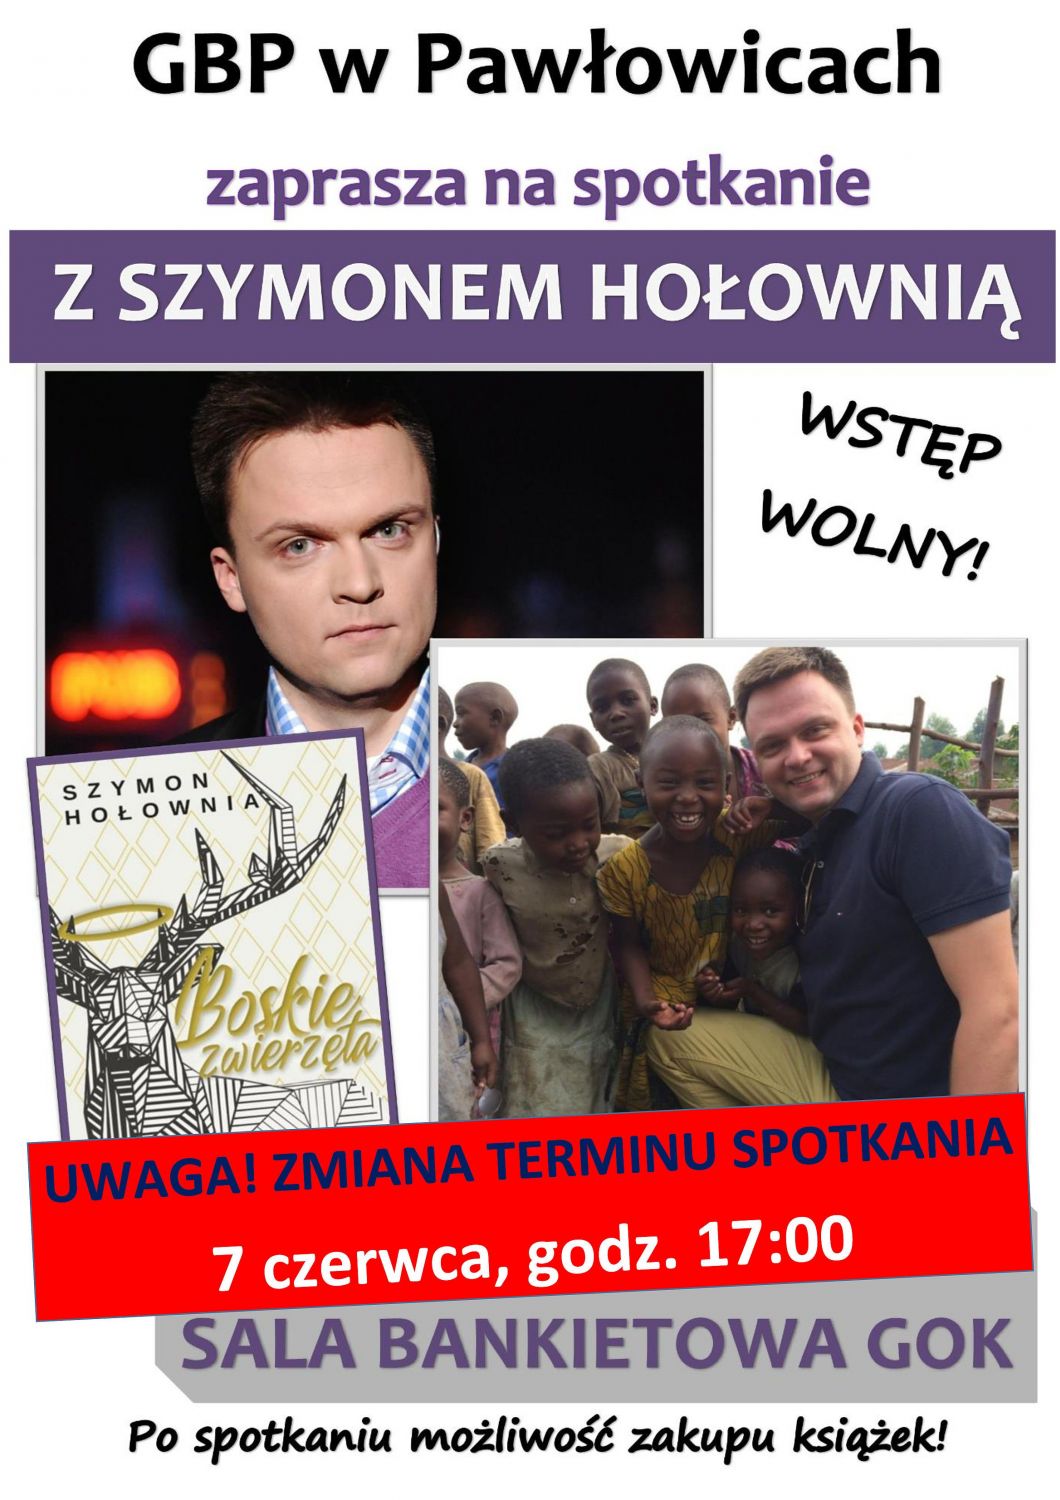 Spotkanie z Szymonem Hołownią w pawłowickim GOKu